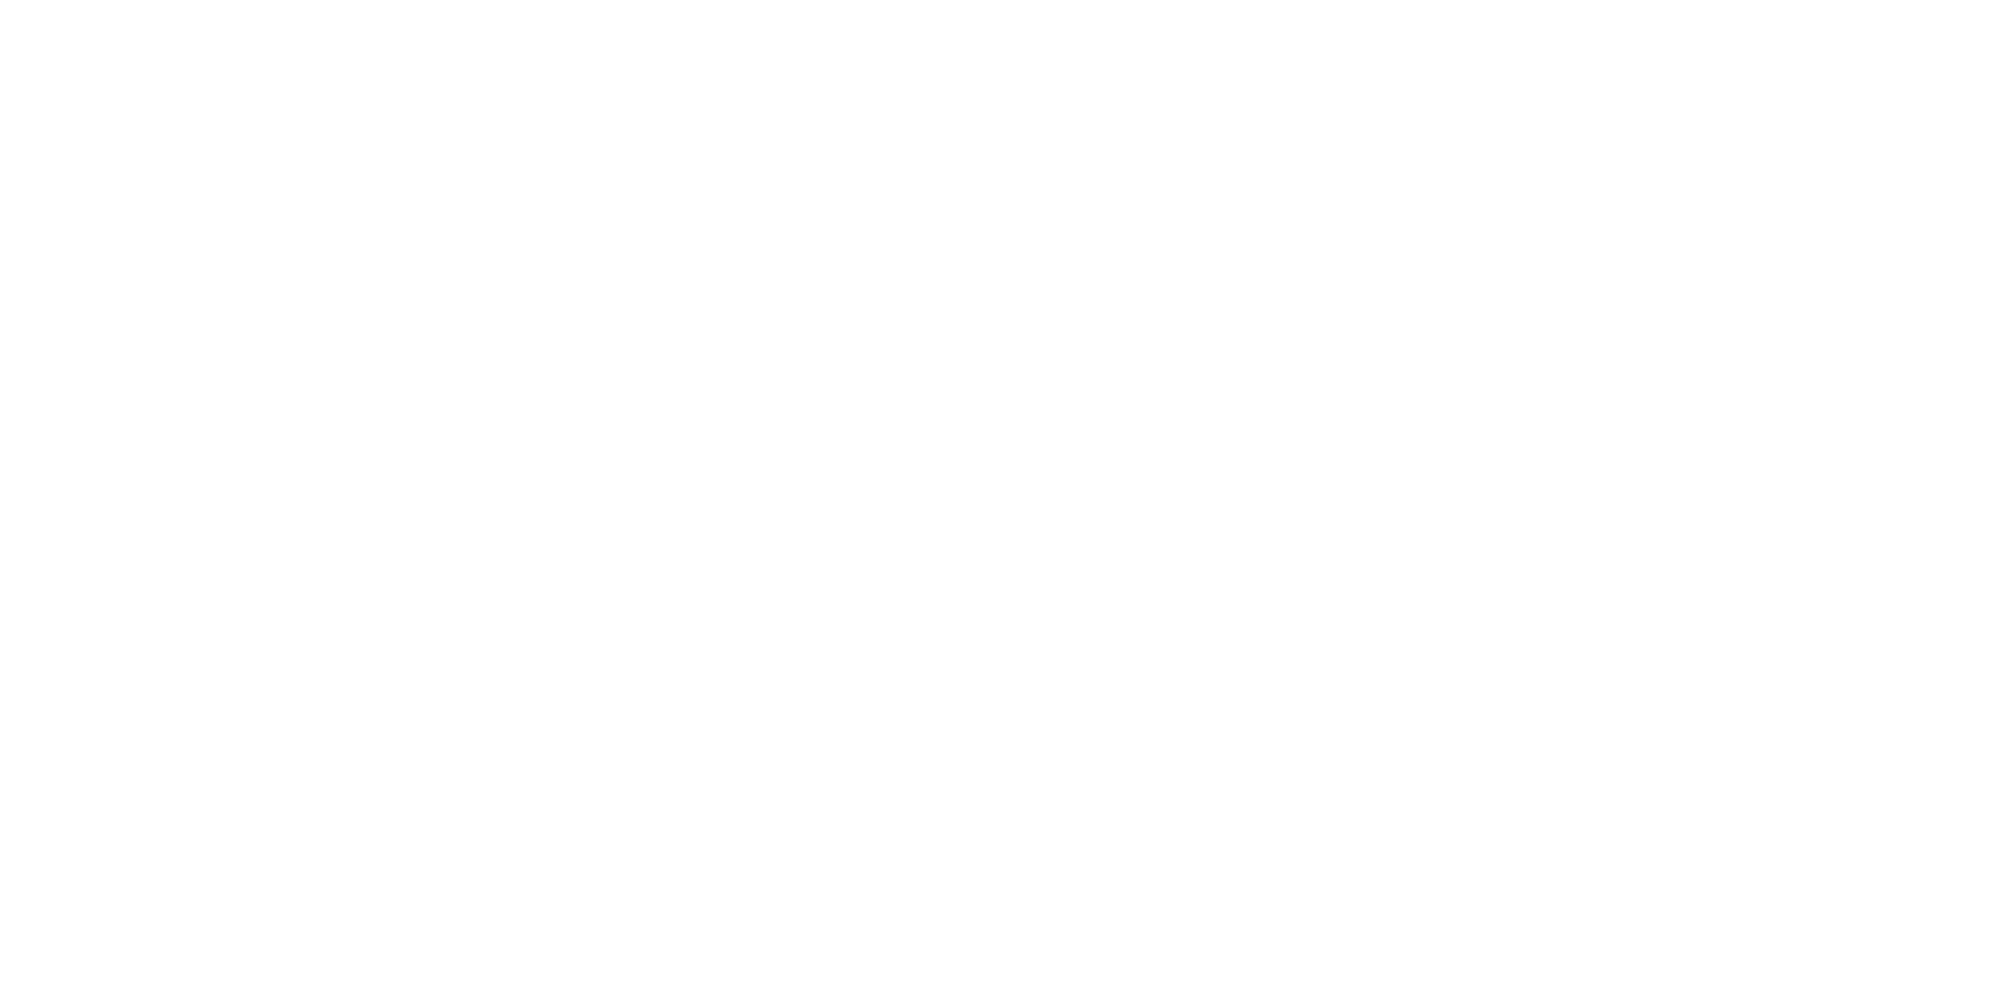 https://citysurgerycenter.com/wp-content/uploads/2022/11/city-surgery-center-bw02-48fix.png